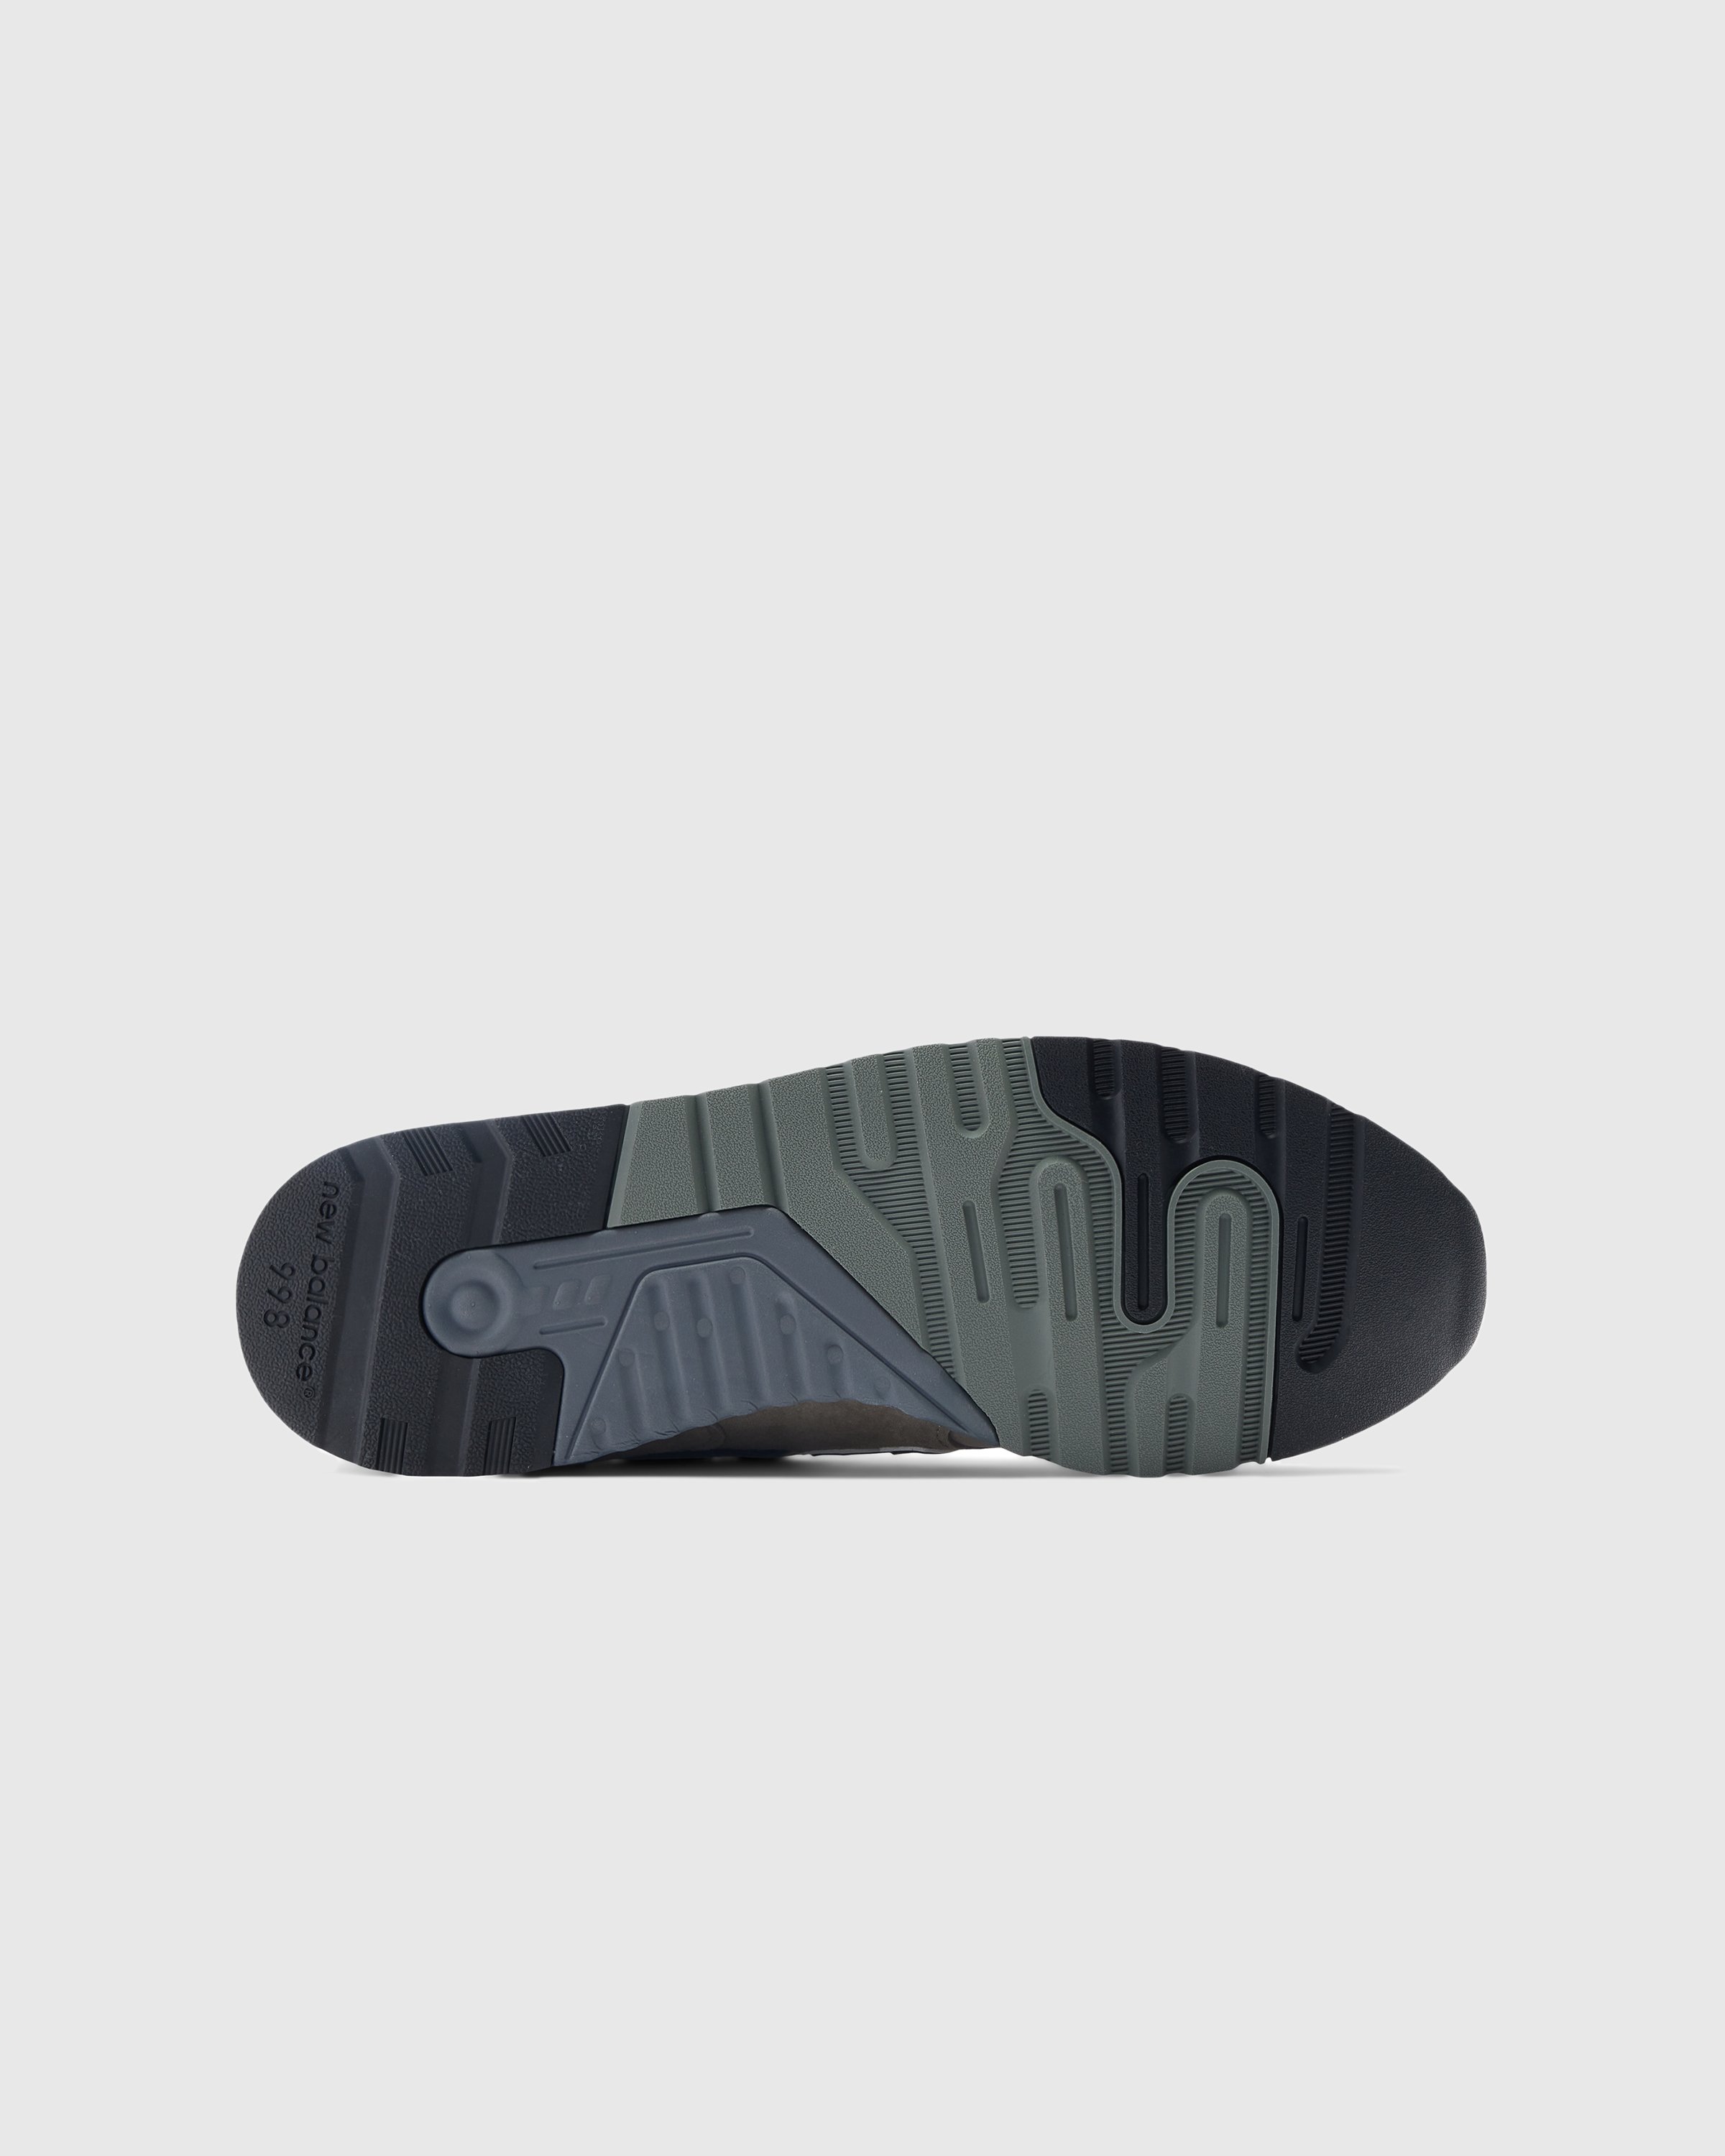 New Balance - U 998 GR Grey - Footwear - Grey - Image 6